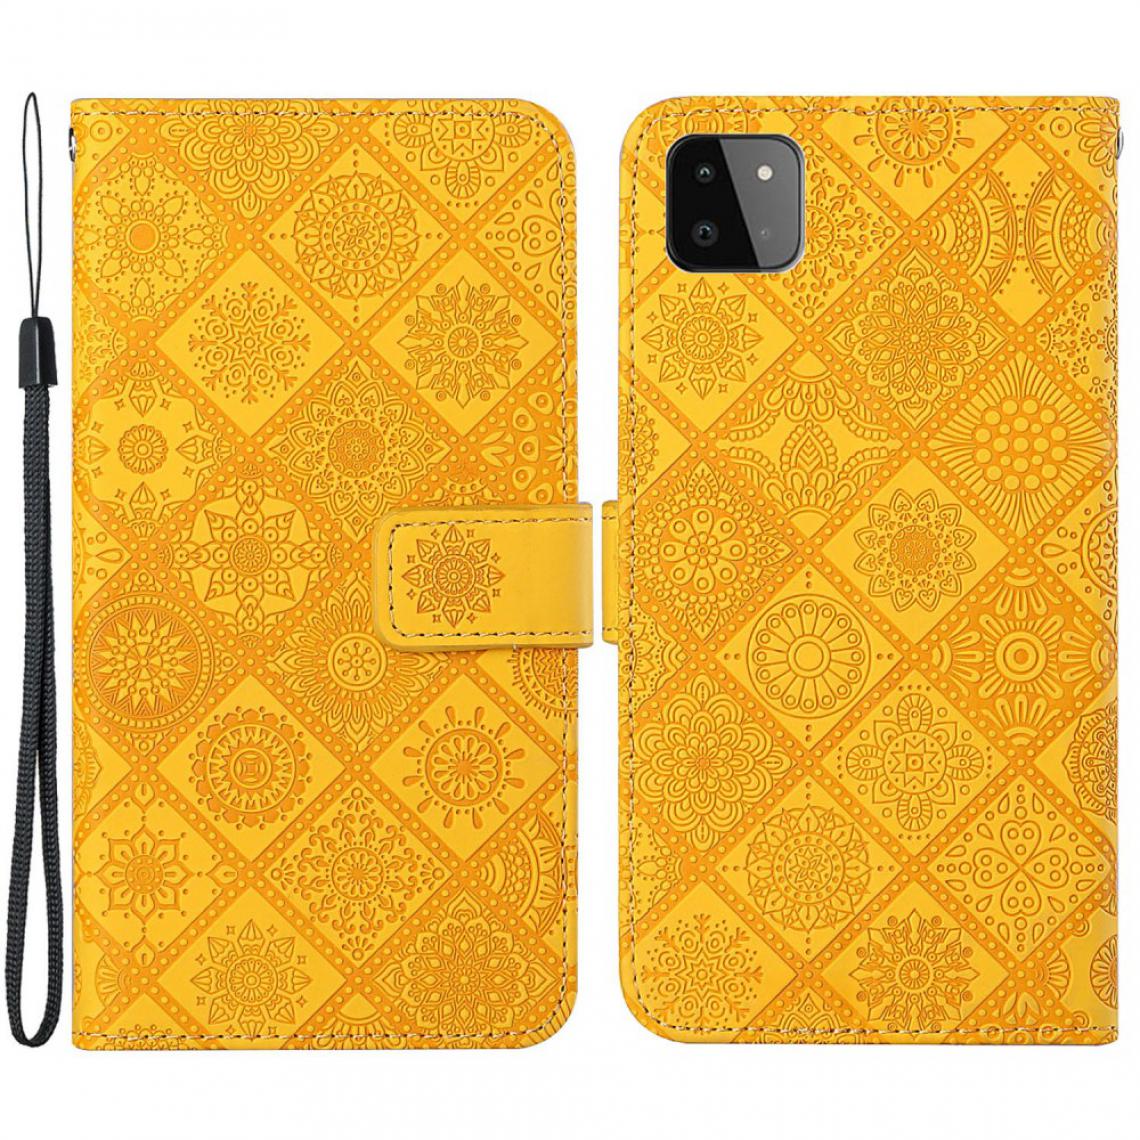 Other - Etui en PU Fermoir aimanté avec fleur imprimée jaune pour votre Samsung Galaxy A22 5G (EU Version) - Coque, étui smartphone